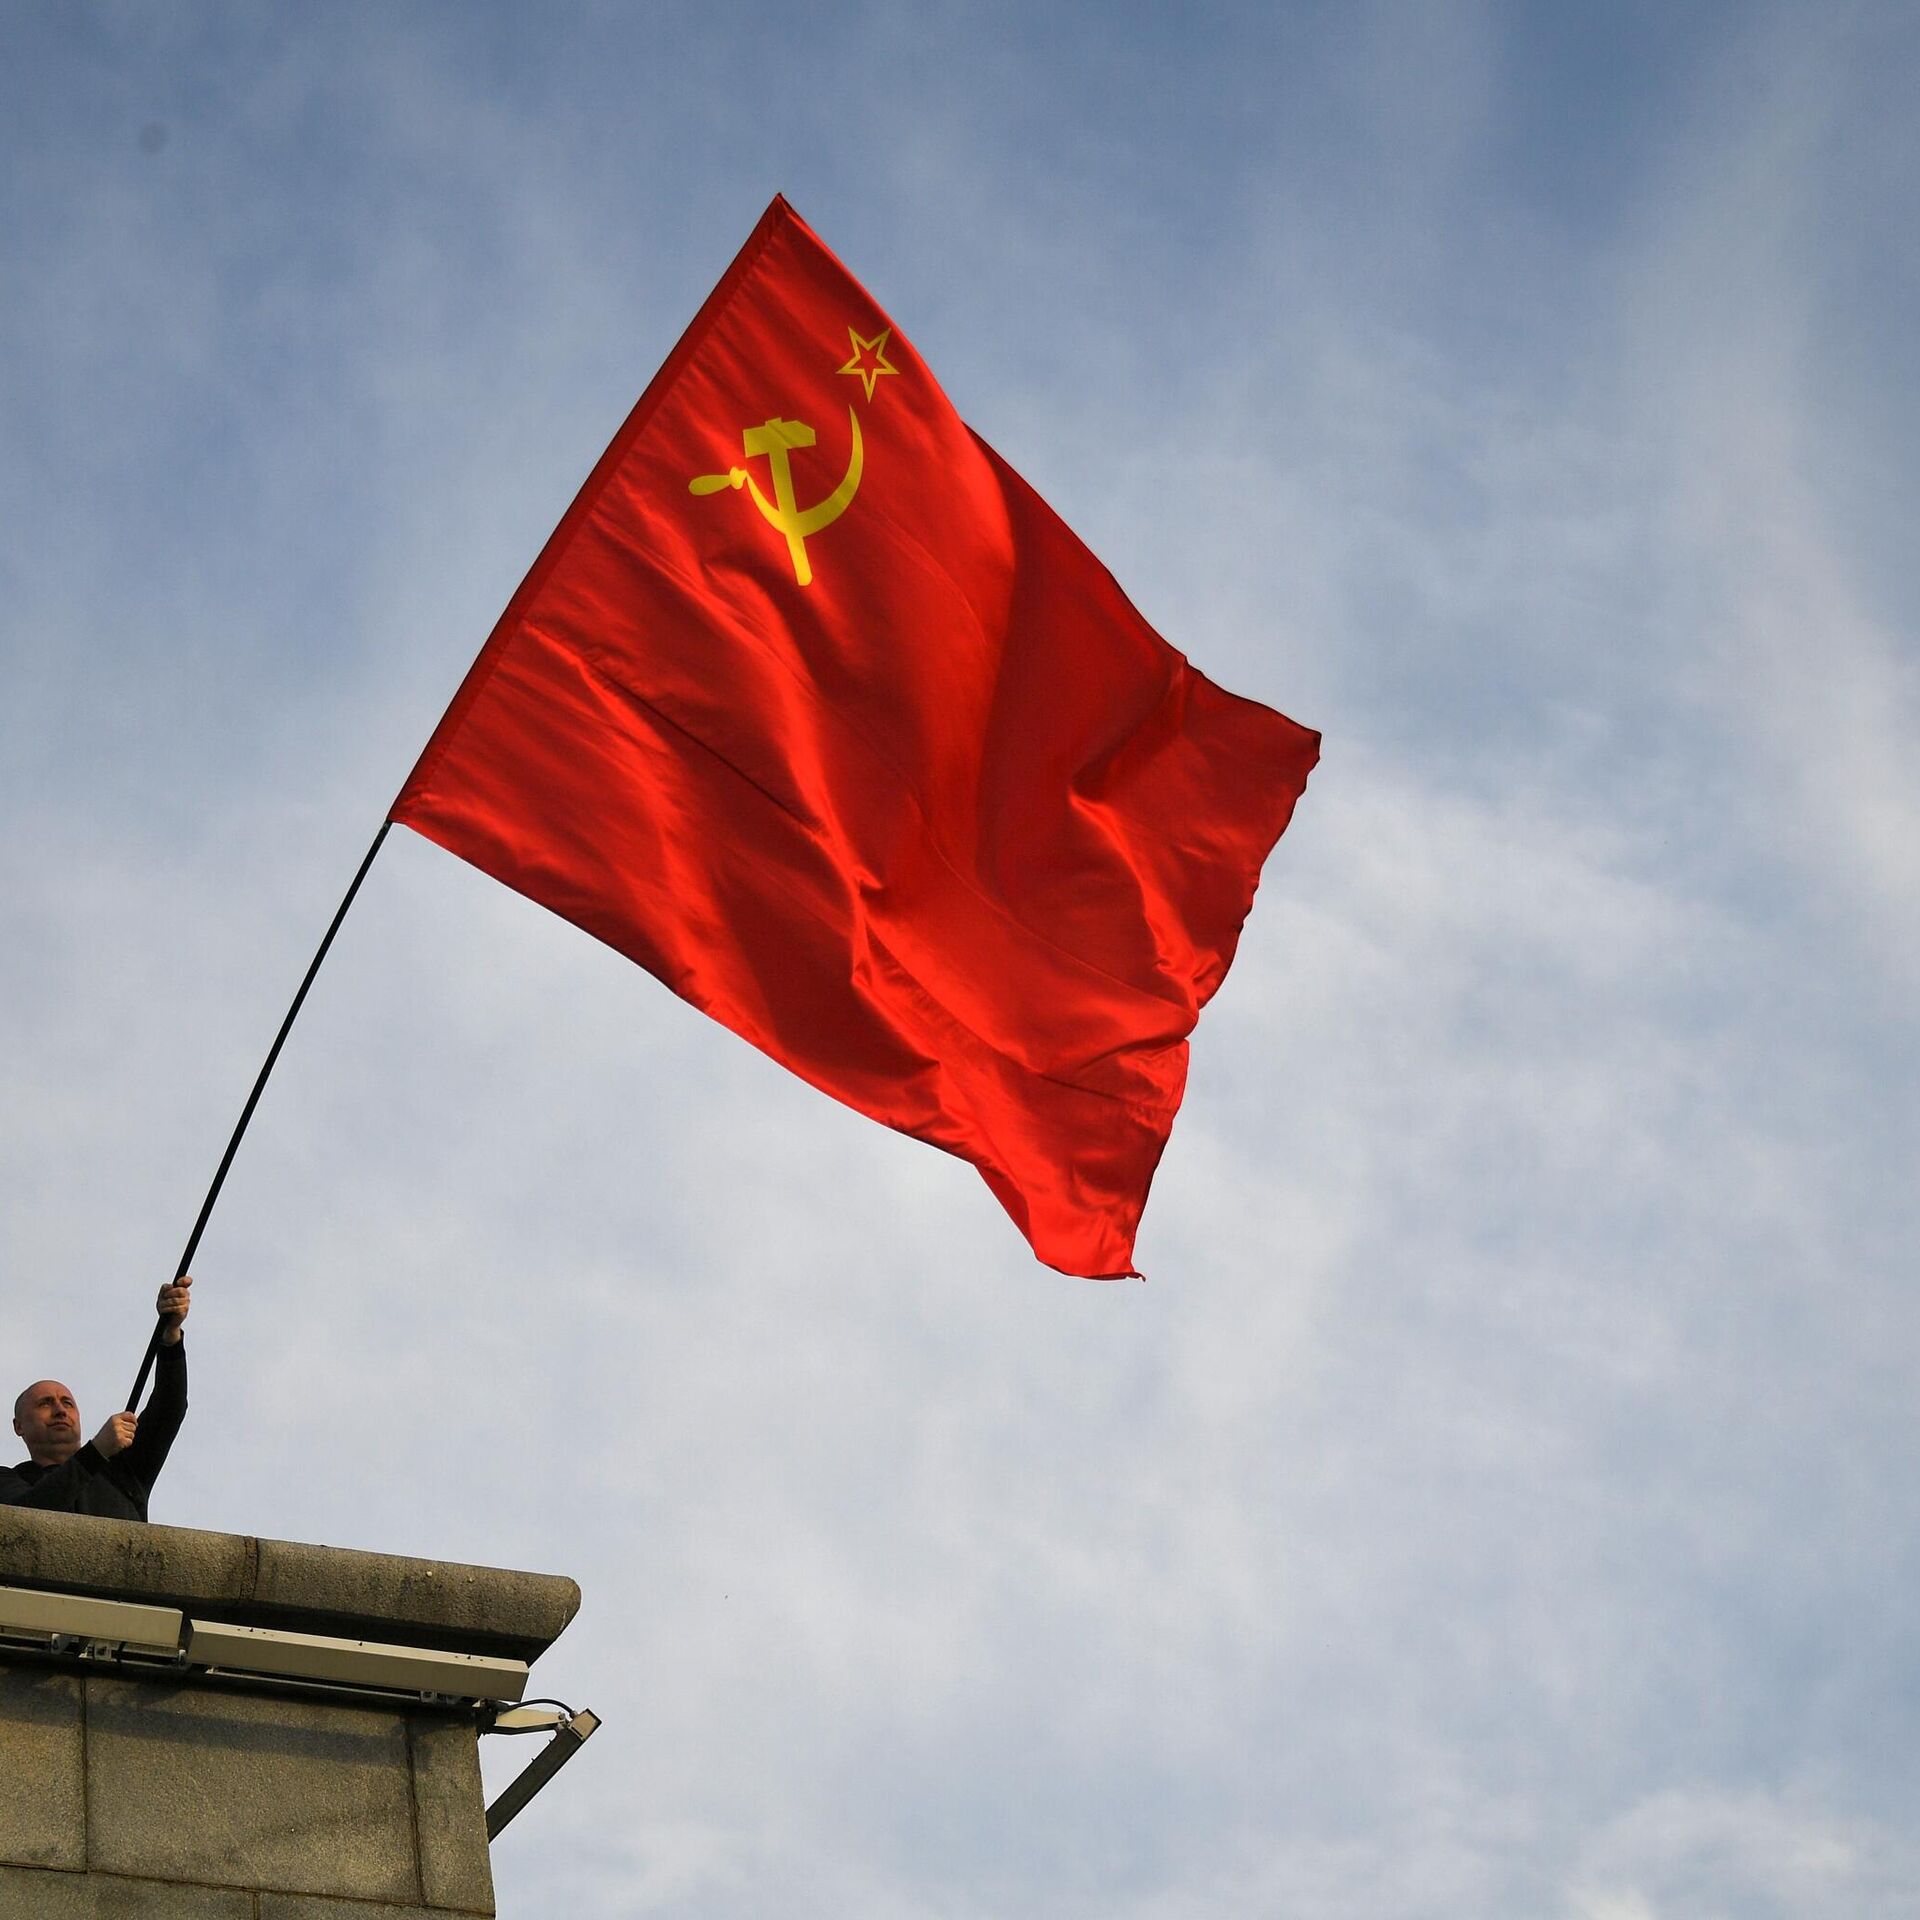 Quốc kỳ ba màu: Quốc kỳ ba màu đã trở thành linh hồn của dân tộc Việt Nam. Trong ảnh mới nhất về từ khóa này, chúng ta sẽ thấy được sự vẻ vang và quyền uy của quốc kỳ trong cuộc sống đại chúng, từ các sự kiện lễ hội đến các cuộc biểu tình.